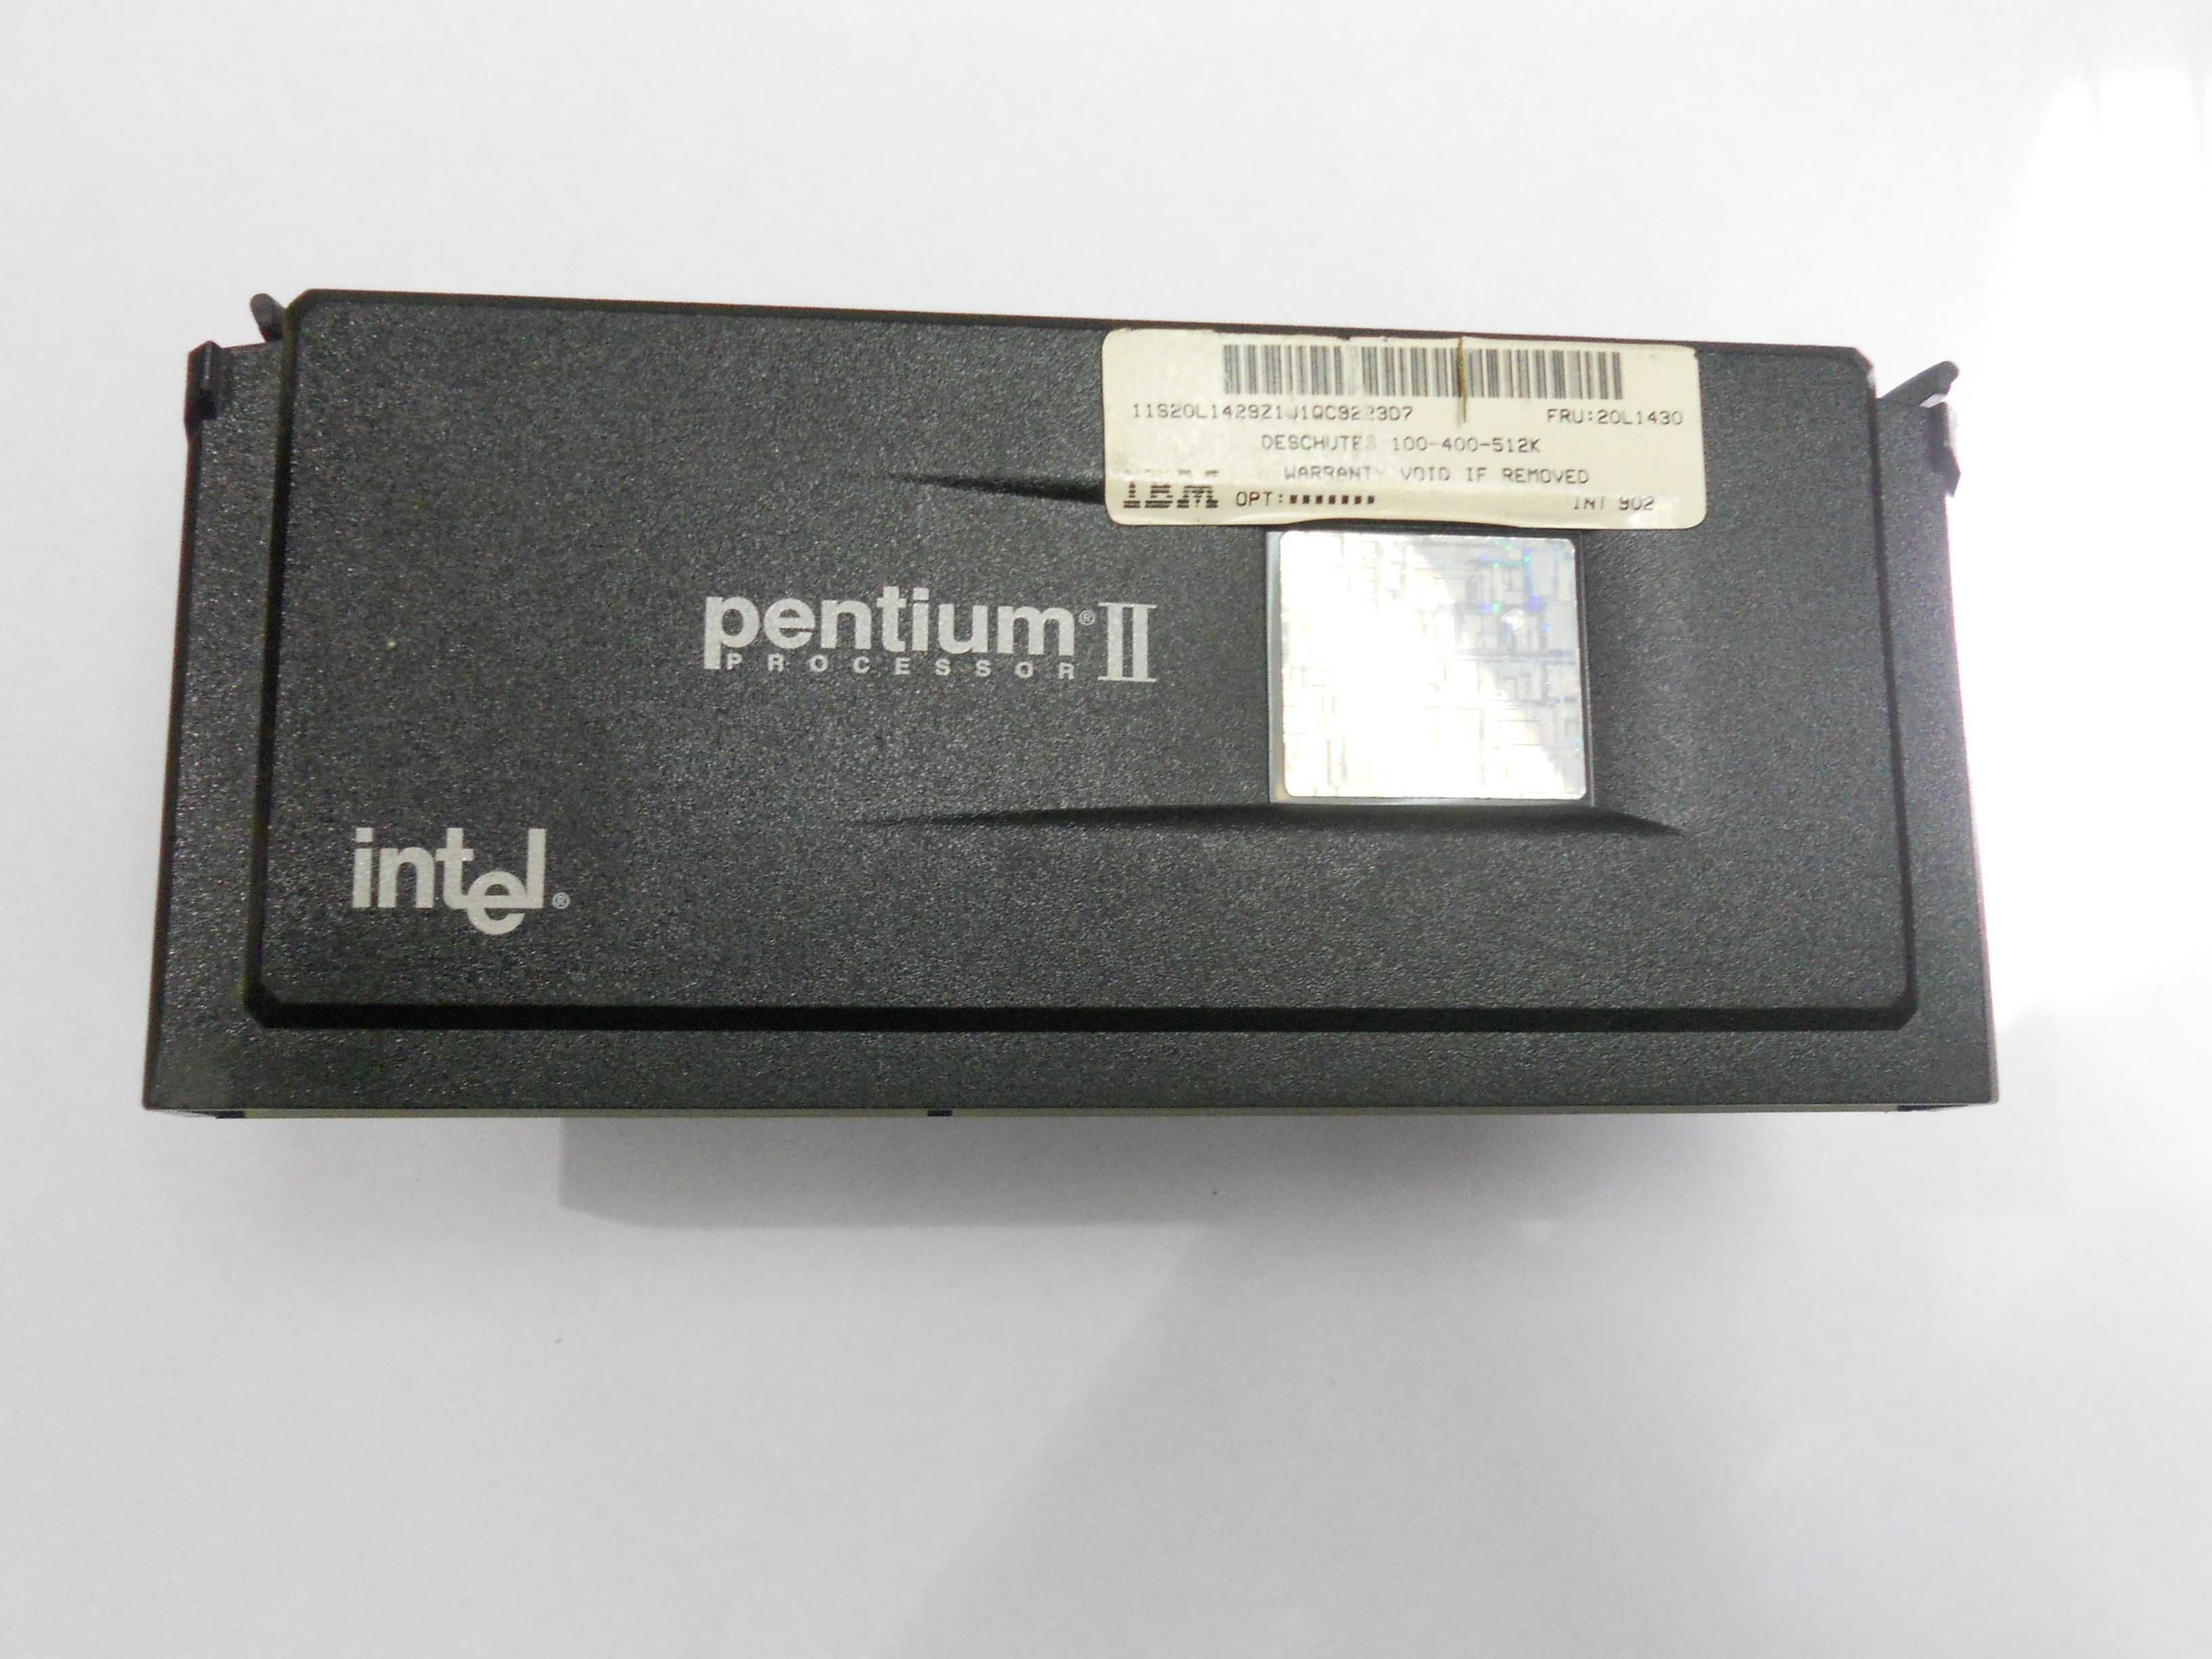 Procesor retro pentium 2 , 400mhz , SLOT1